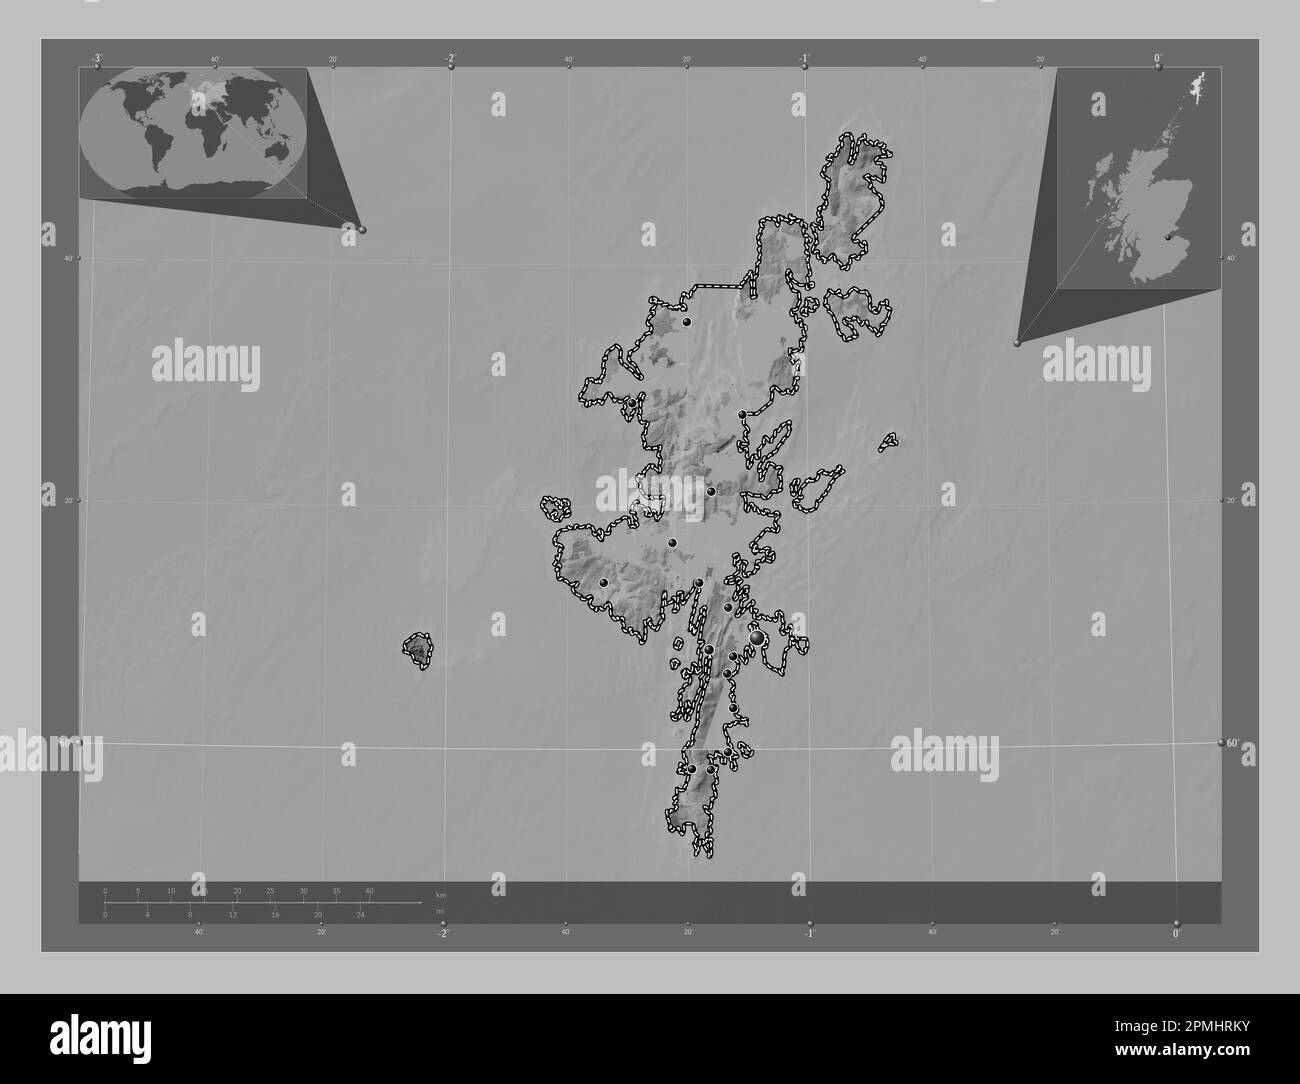 Shetland Islands, Region Schottland – Großbritannien. Grauskala-Höhenkarte mit Seen und Flüssen. Standorte der wichtigsten Städte der Region. Ecke A Stockfoto